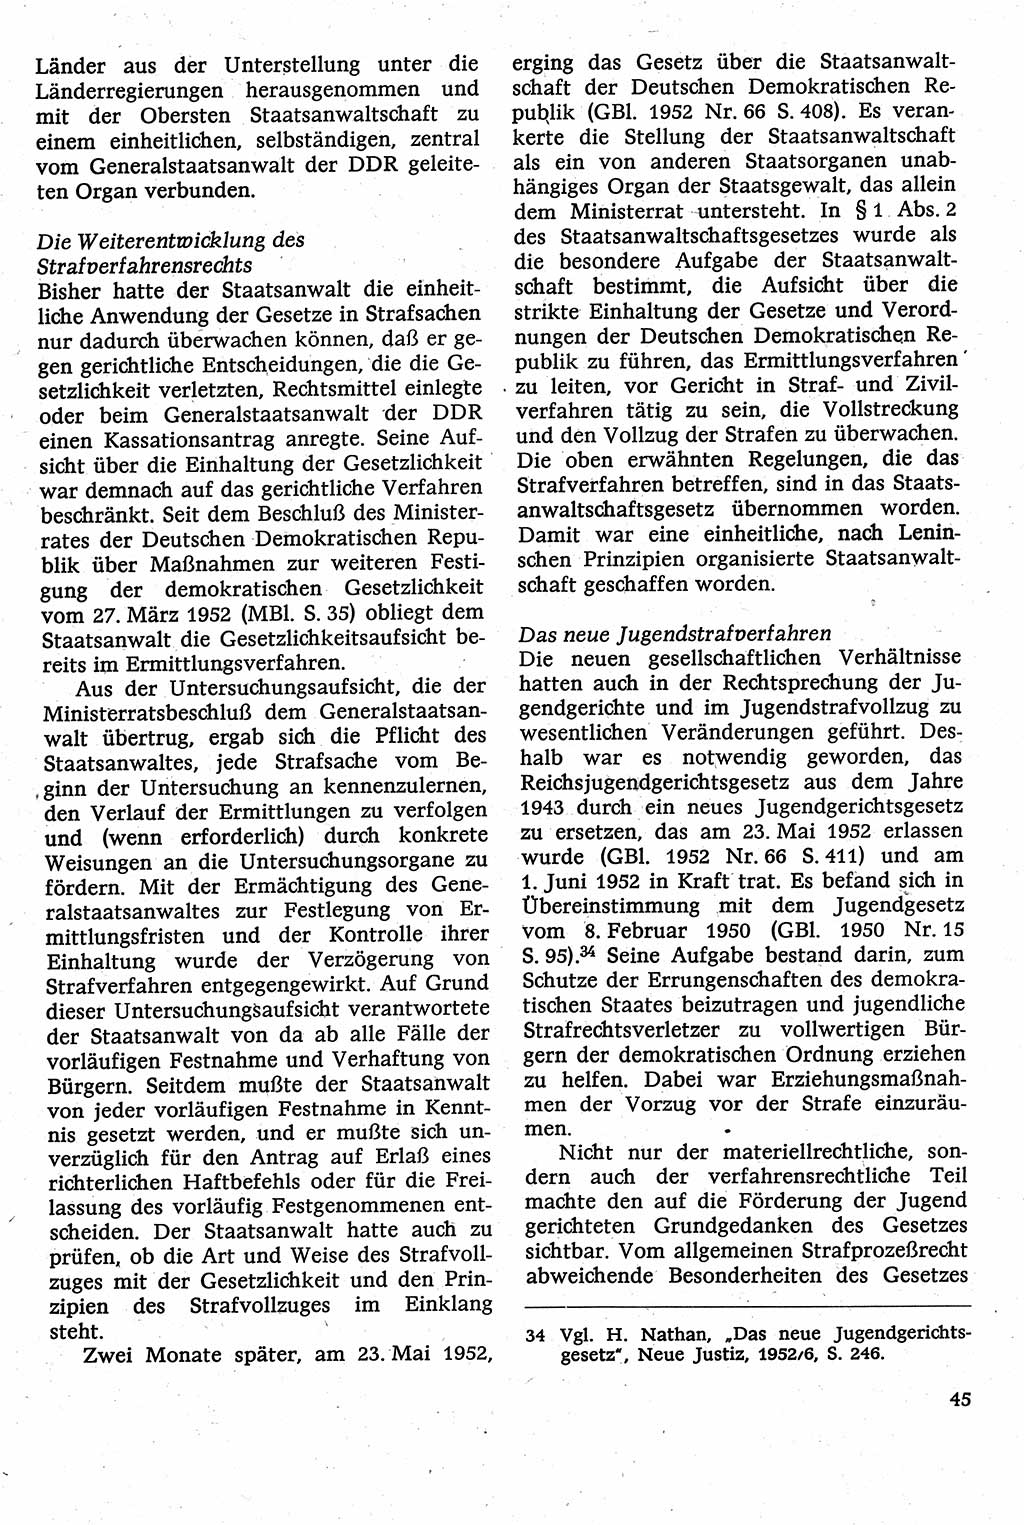 Strafverfahrensrecht [Deutsche Demokratische Republik (DDR)], Lehrbuch 1982, Seite 45 (Strafverf.-R. DDR Lb. 1982, S. 45)